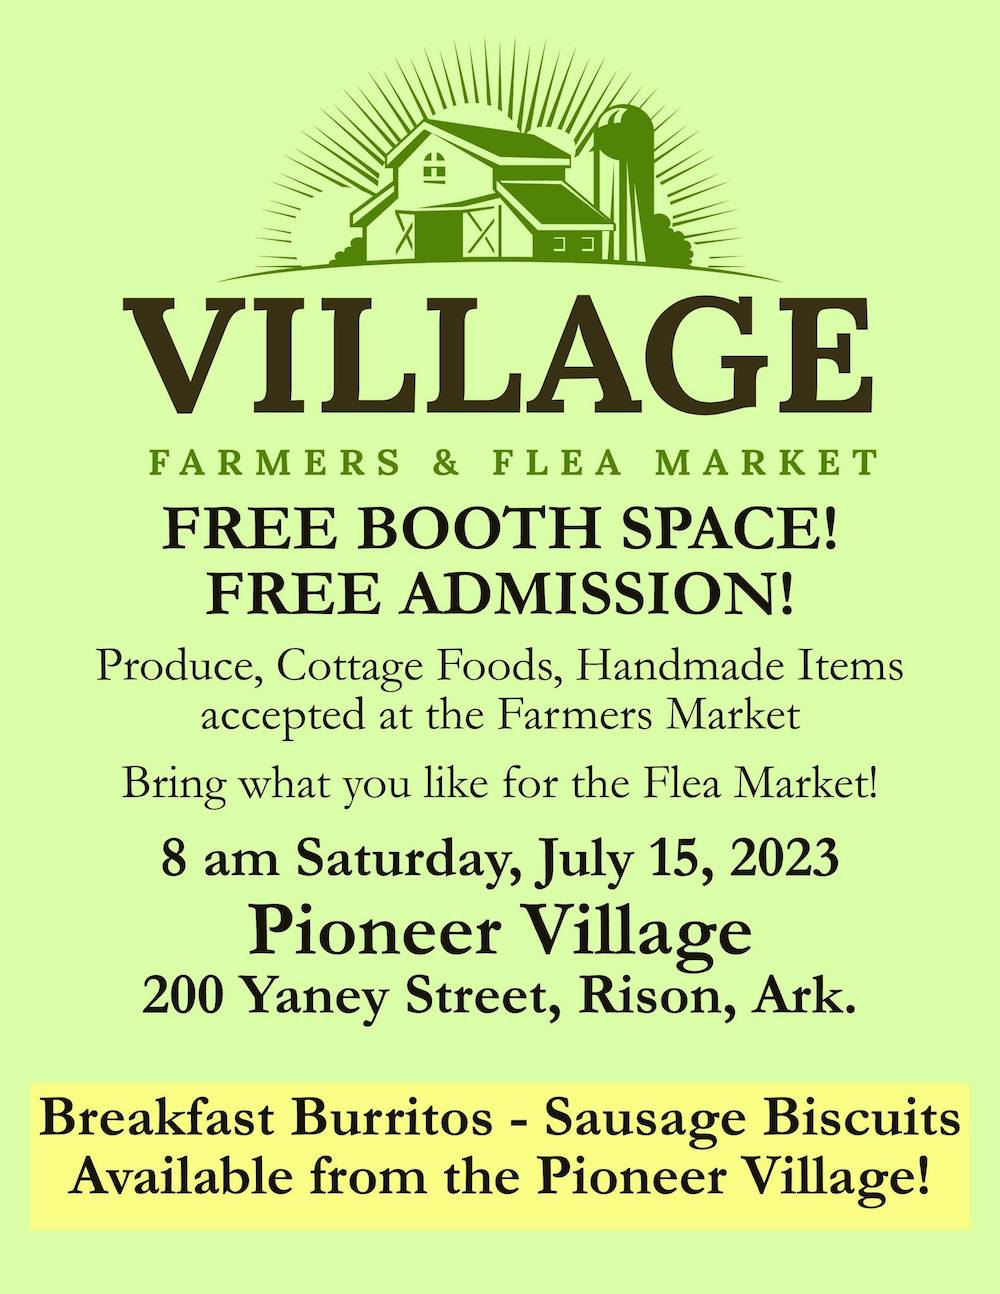 Rison’s Pioneer Village set to host Farmers & Flea Market